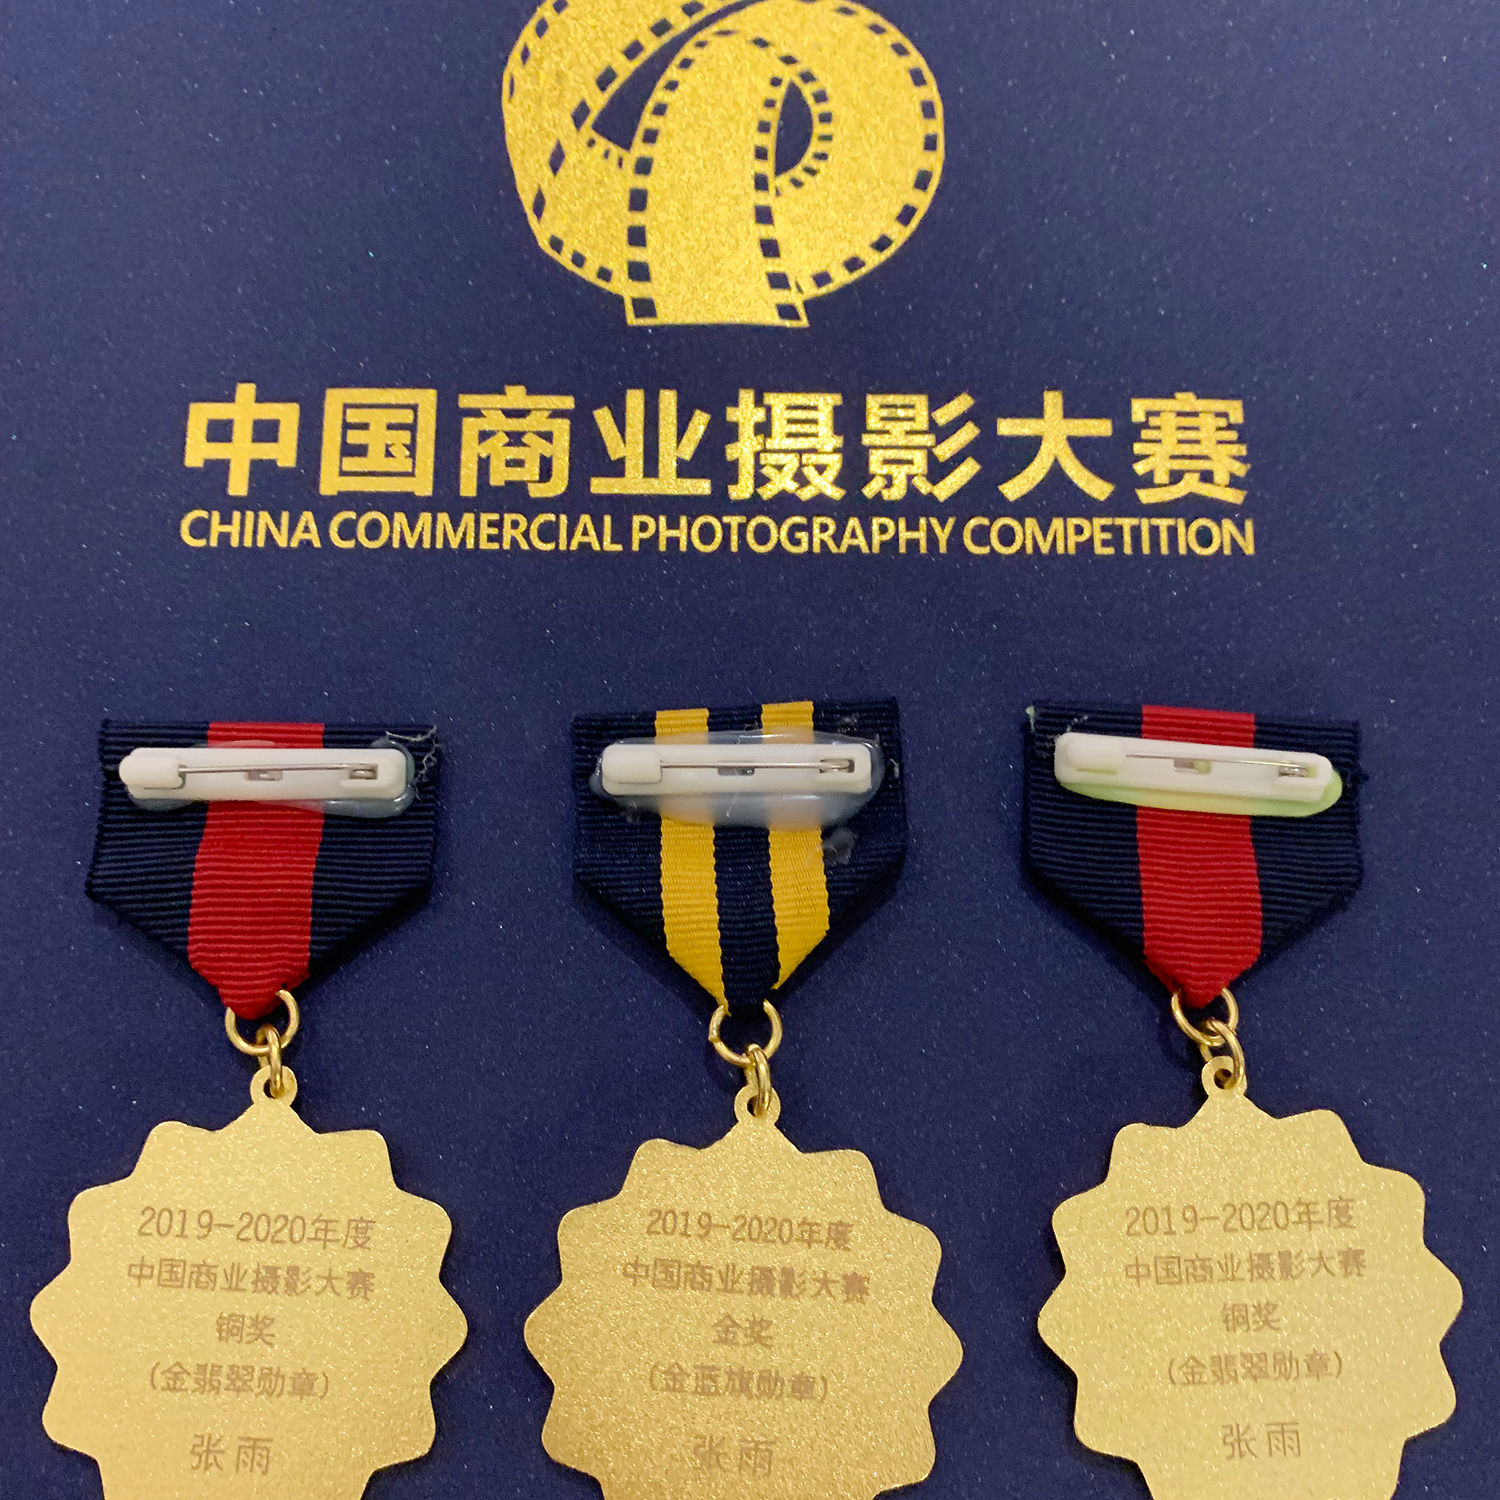 祝賀如一攝影在中國(guó)商業攝影大賽中榮獲金獎-江蘇南京商業廣告專業攝影公司